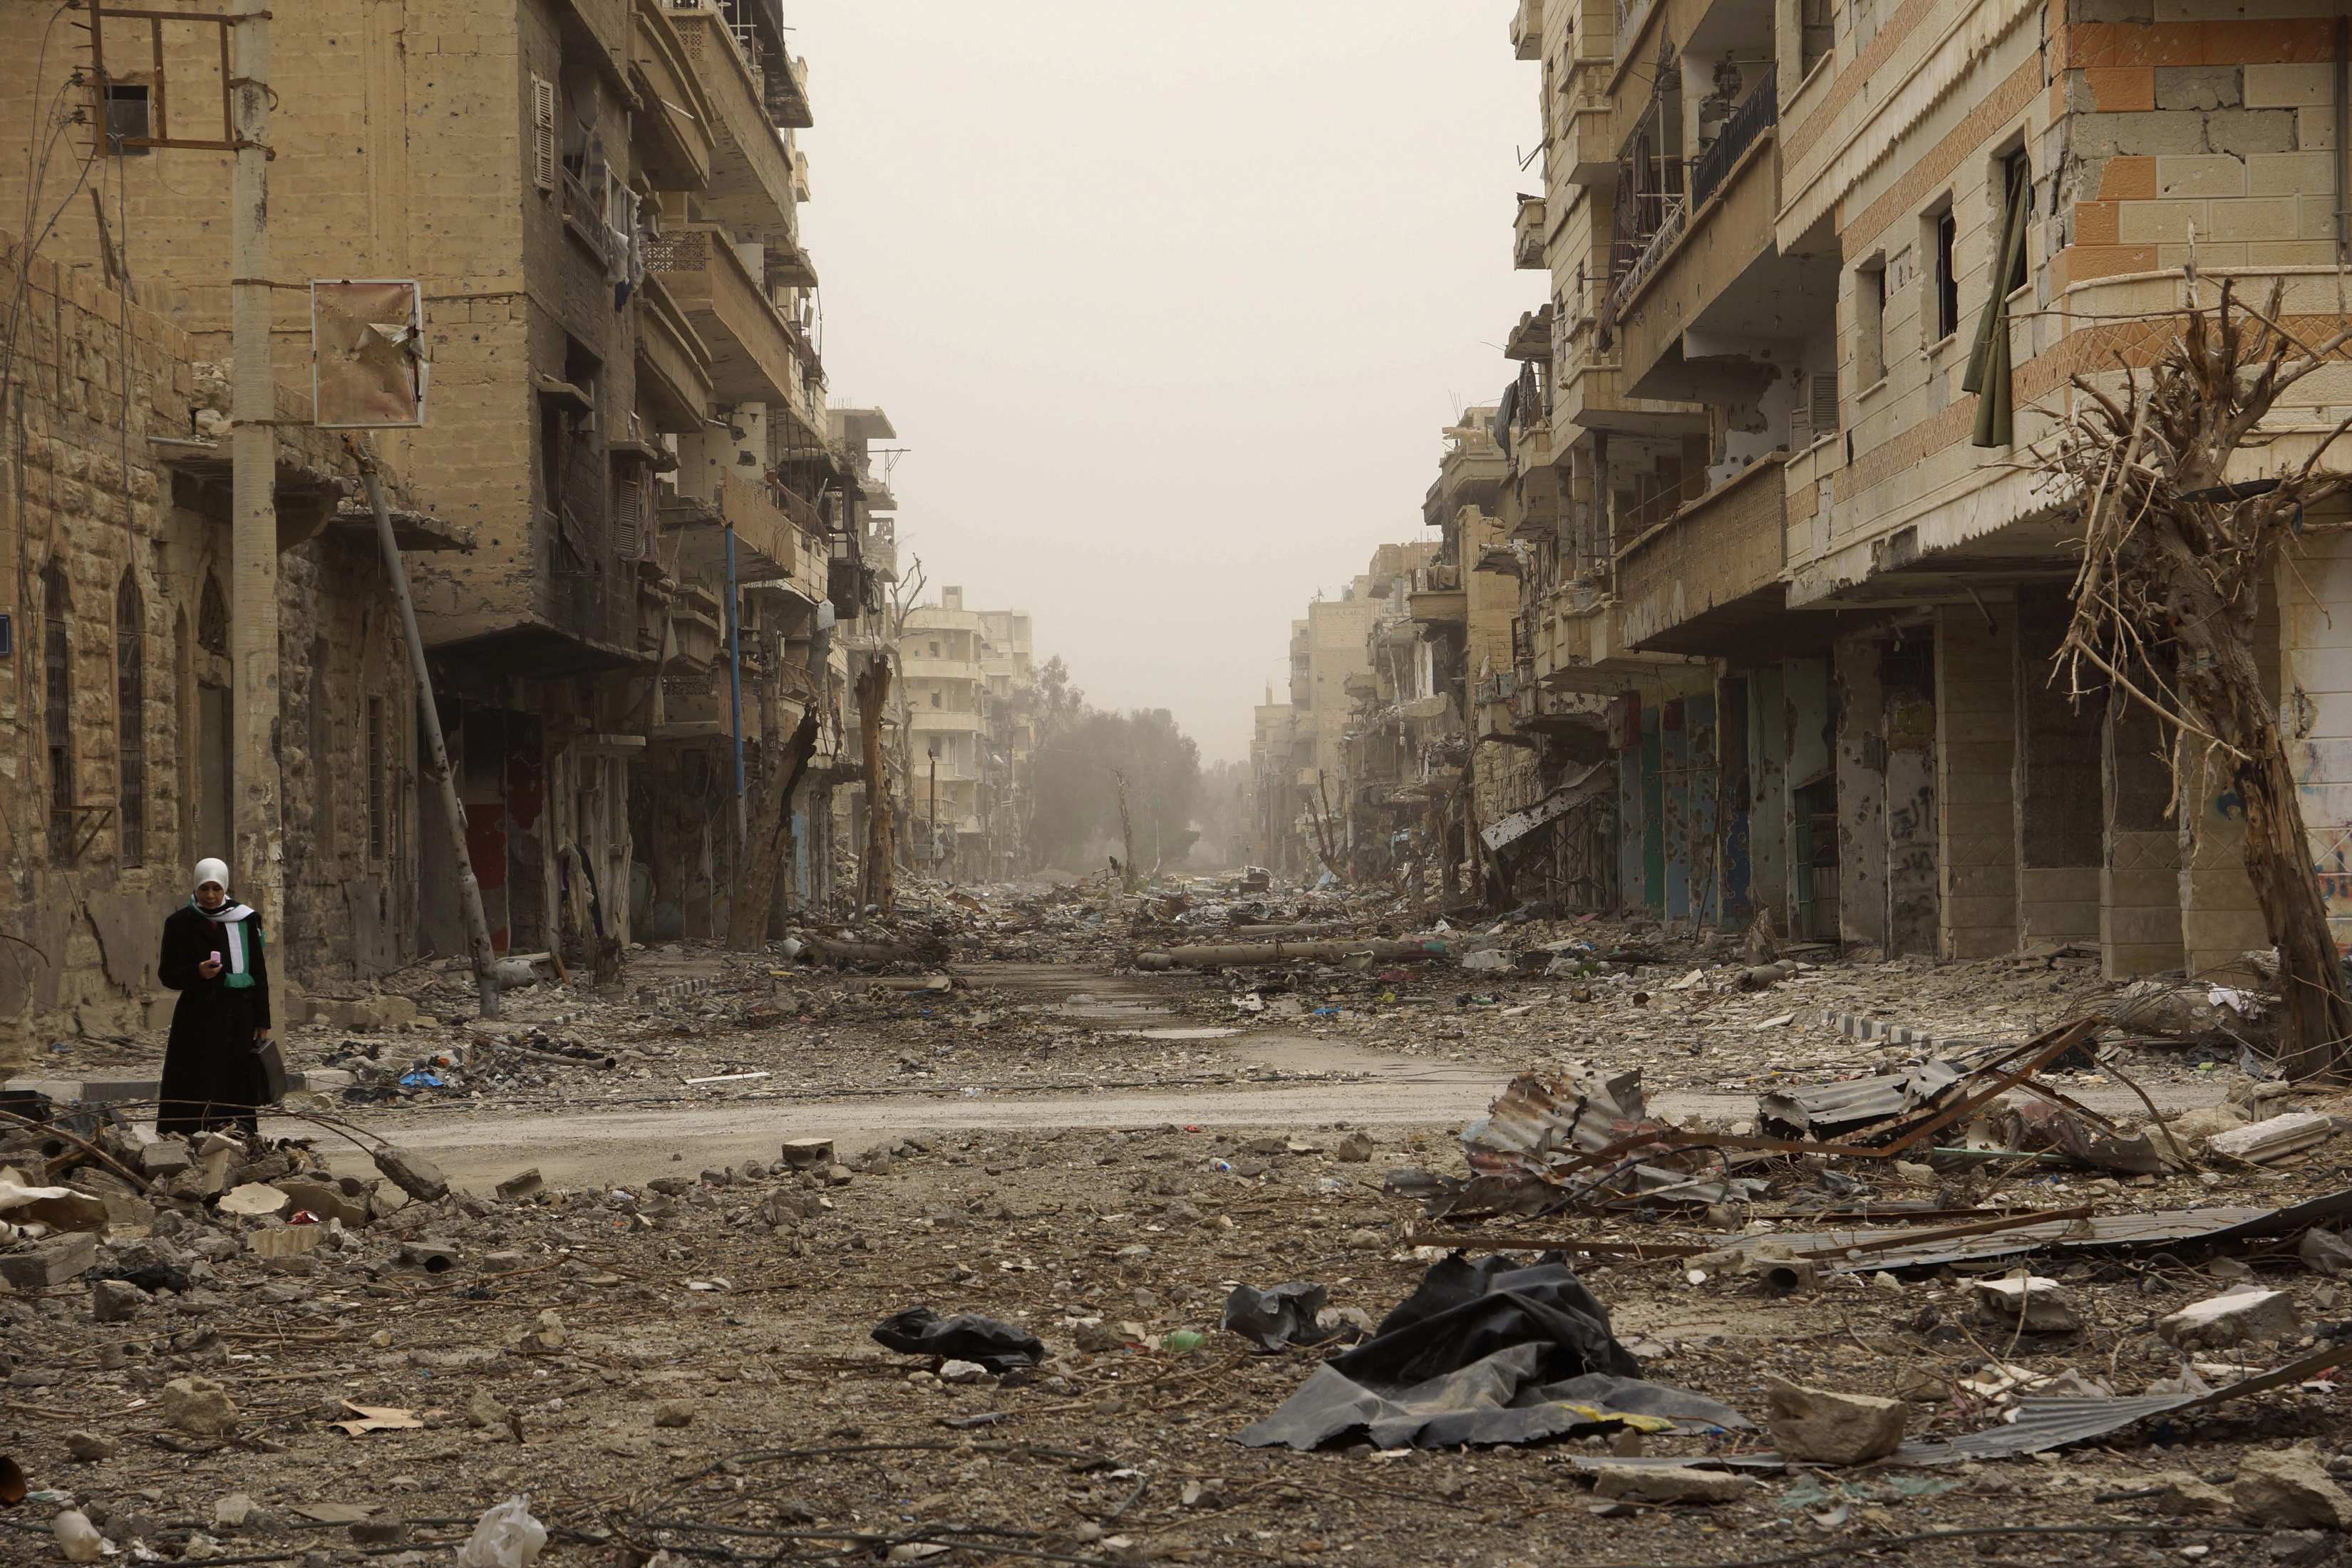 Разрушенная сирия. Город Дейр-эз-зор. Город Хомс Сирия до войны. Разрушенный город.